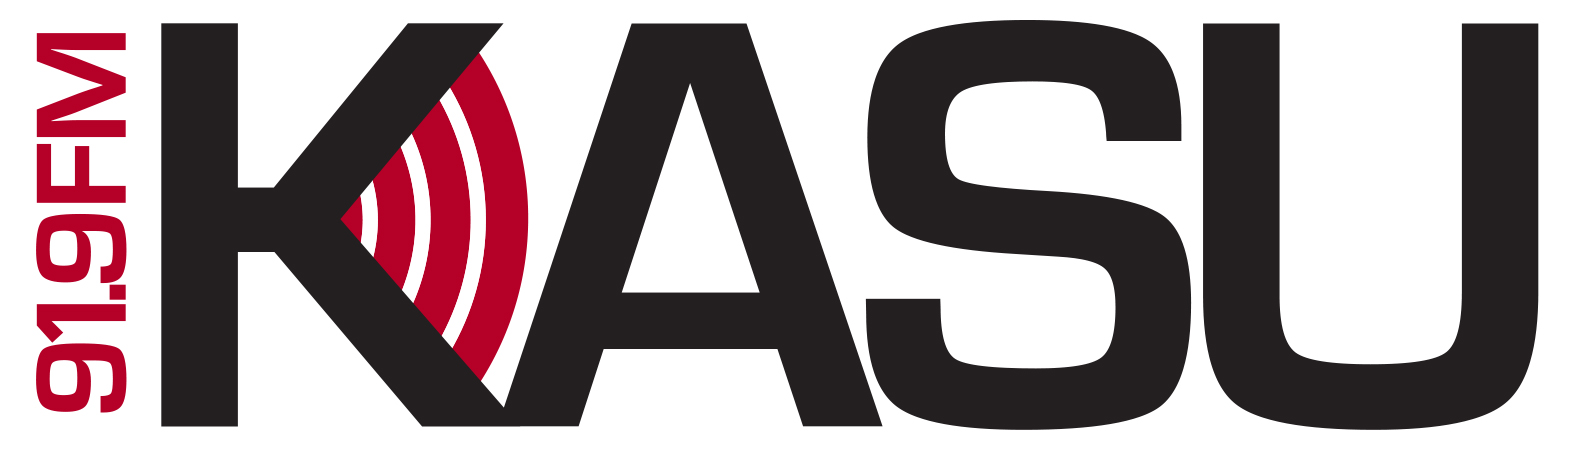 KASU logo